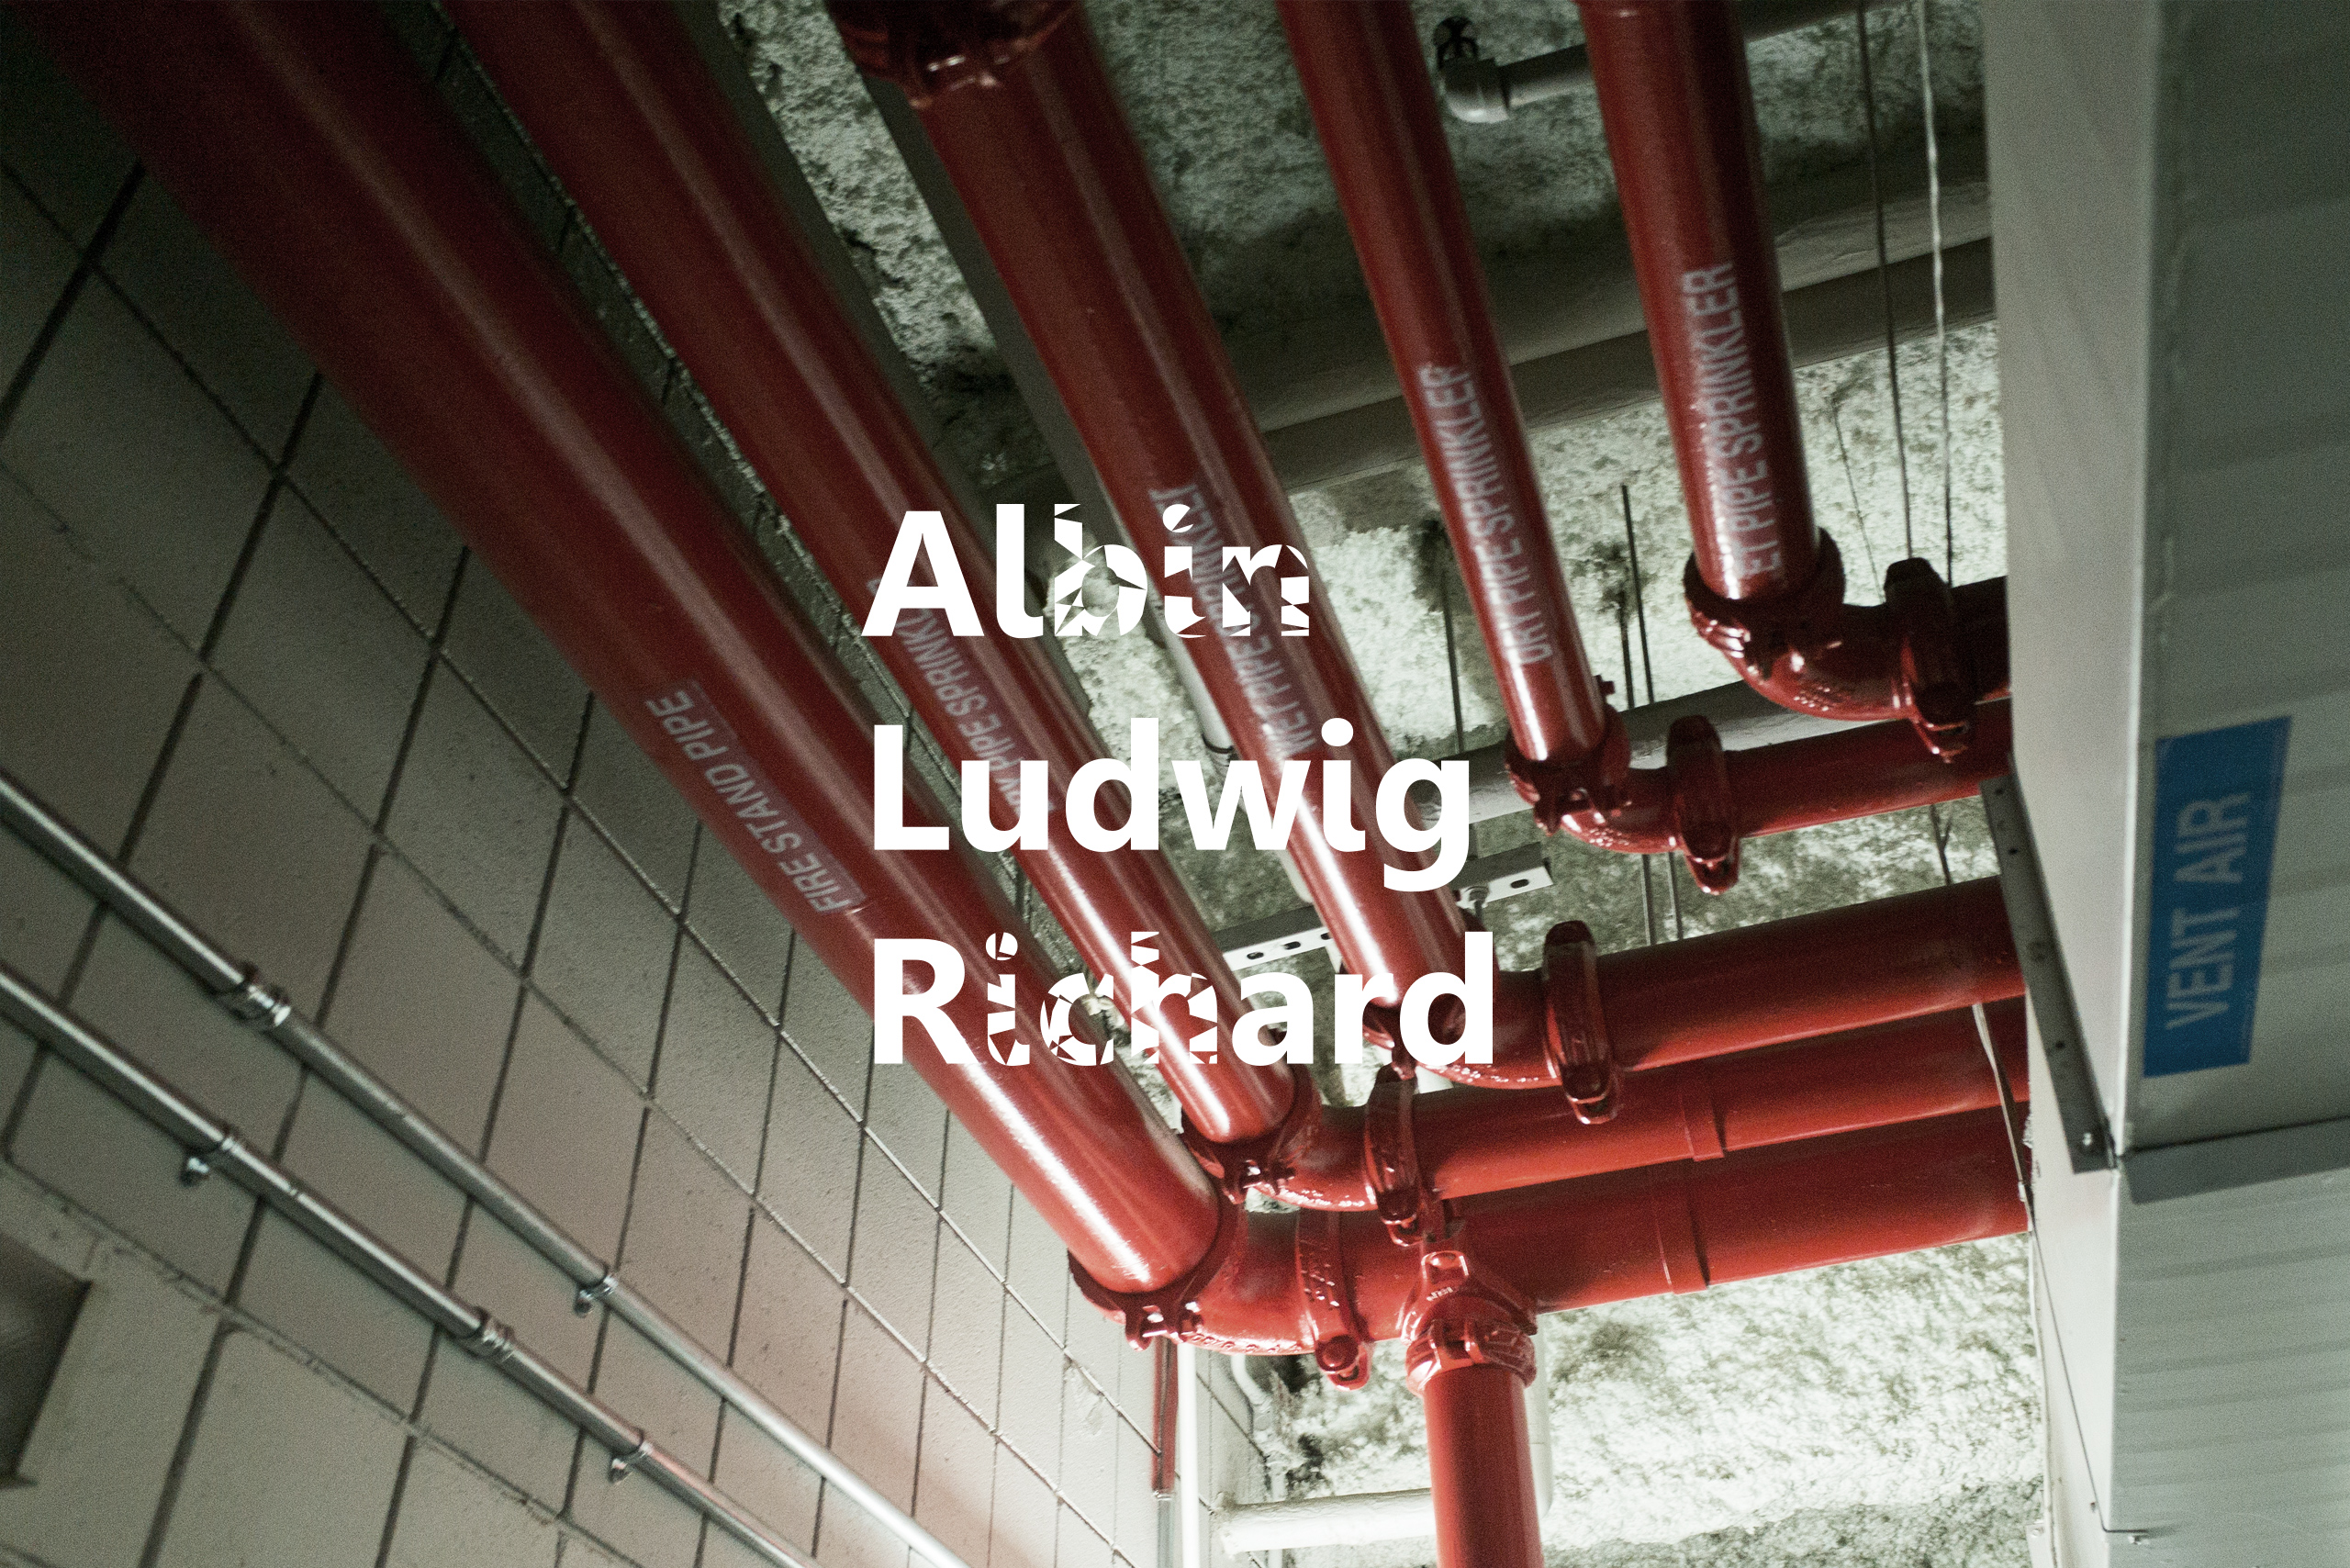 Launch of Albin Ludwig Richard